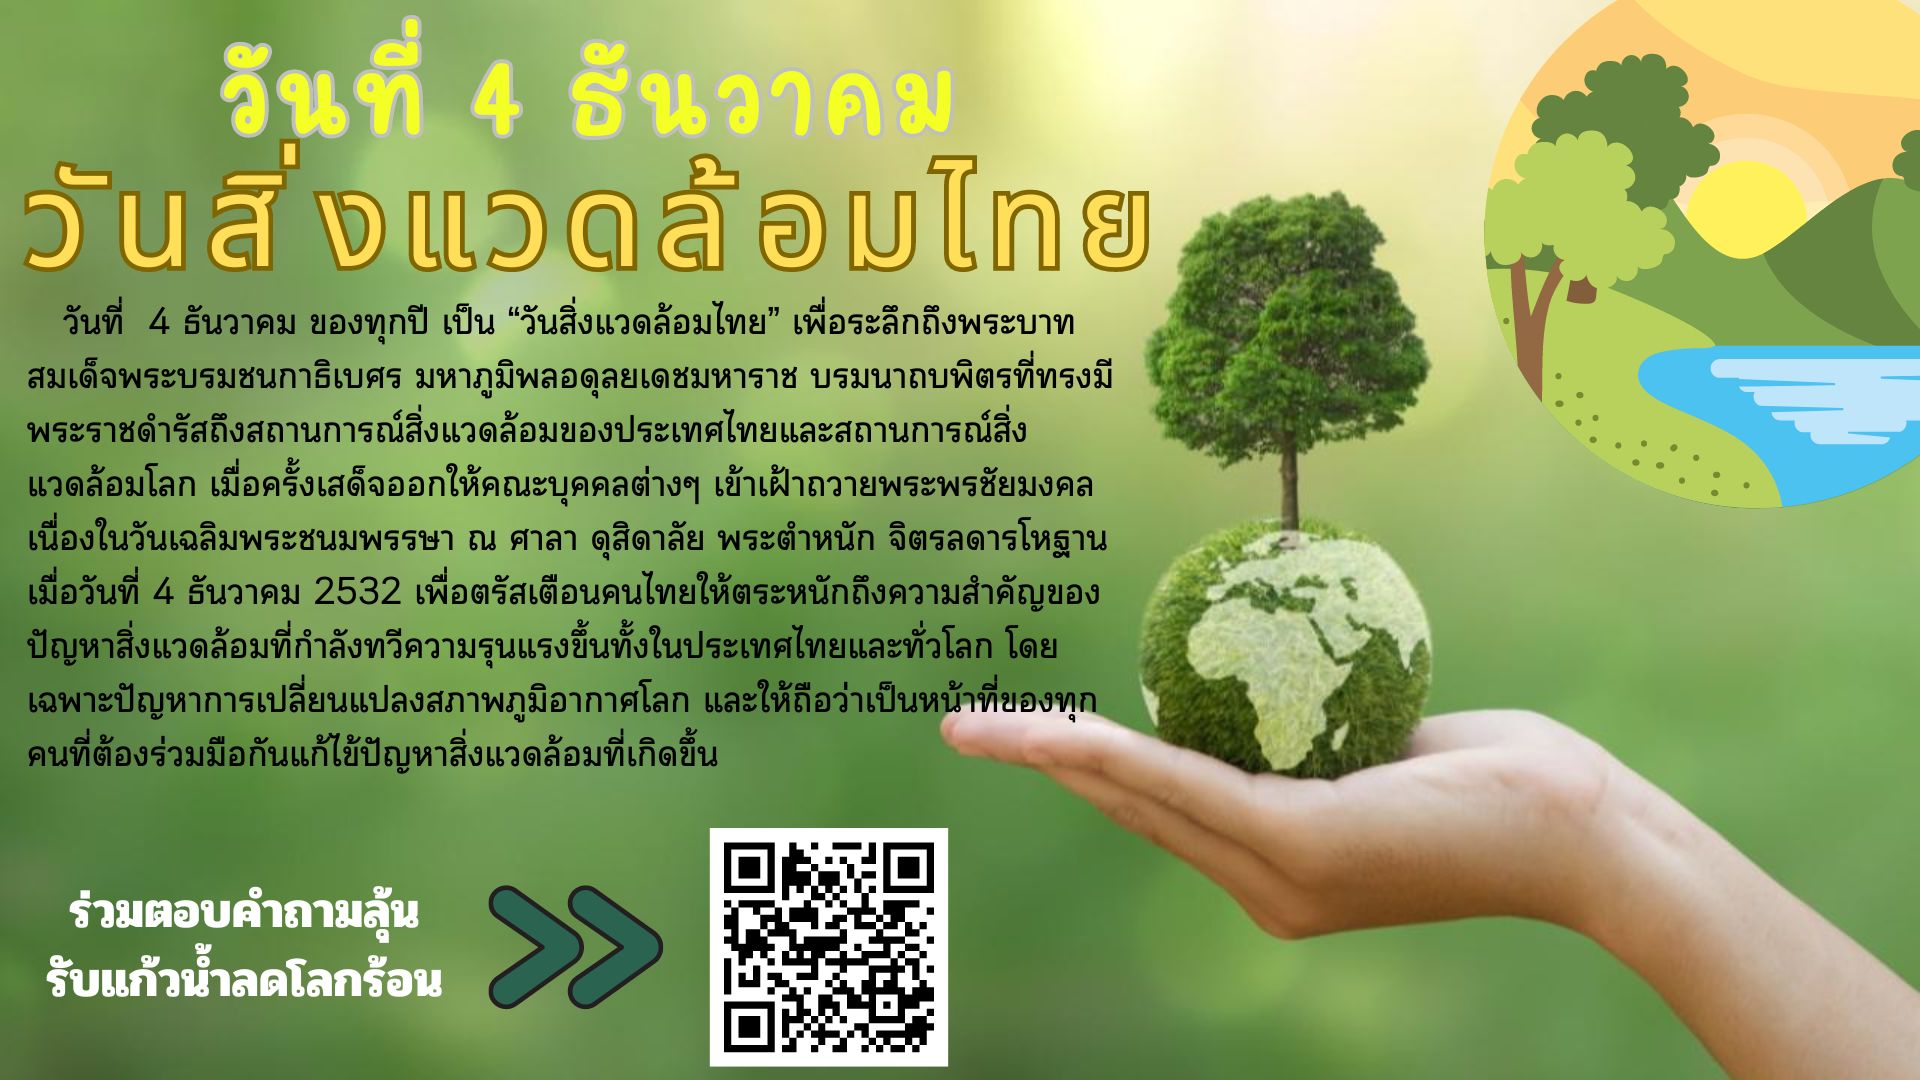 สำนักวิทยบริการฯ เชิญชวนอนุรักษ์ทรัพยากรธรรมชาติให้ยั่งยืน และร่วมกิจกรรมตอบคำถามชิงรางวัลแก้วน้ำลดโลกร้อน เนื่องใน 4 ธันวาคม "วันสิ่งแวดล้อมไทย"